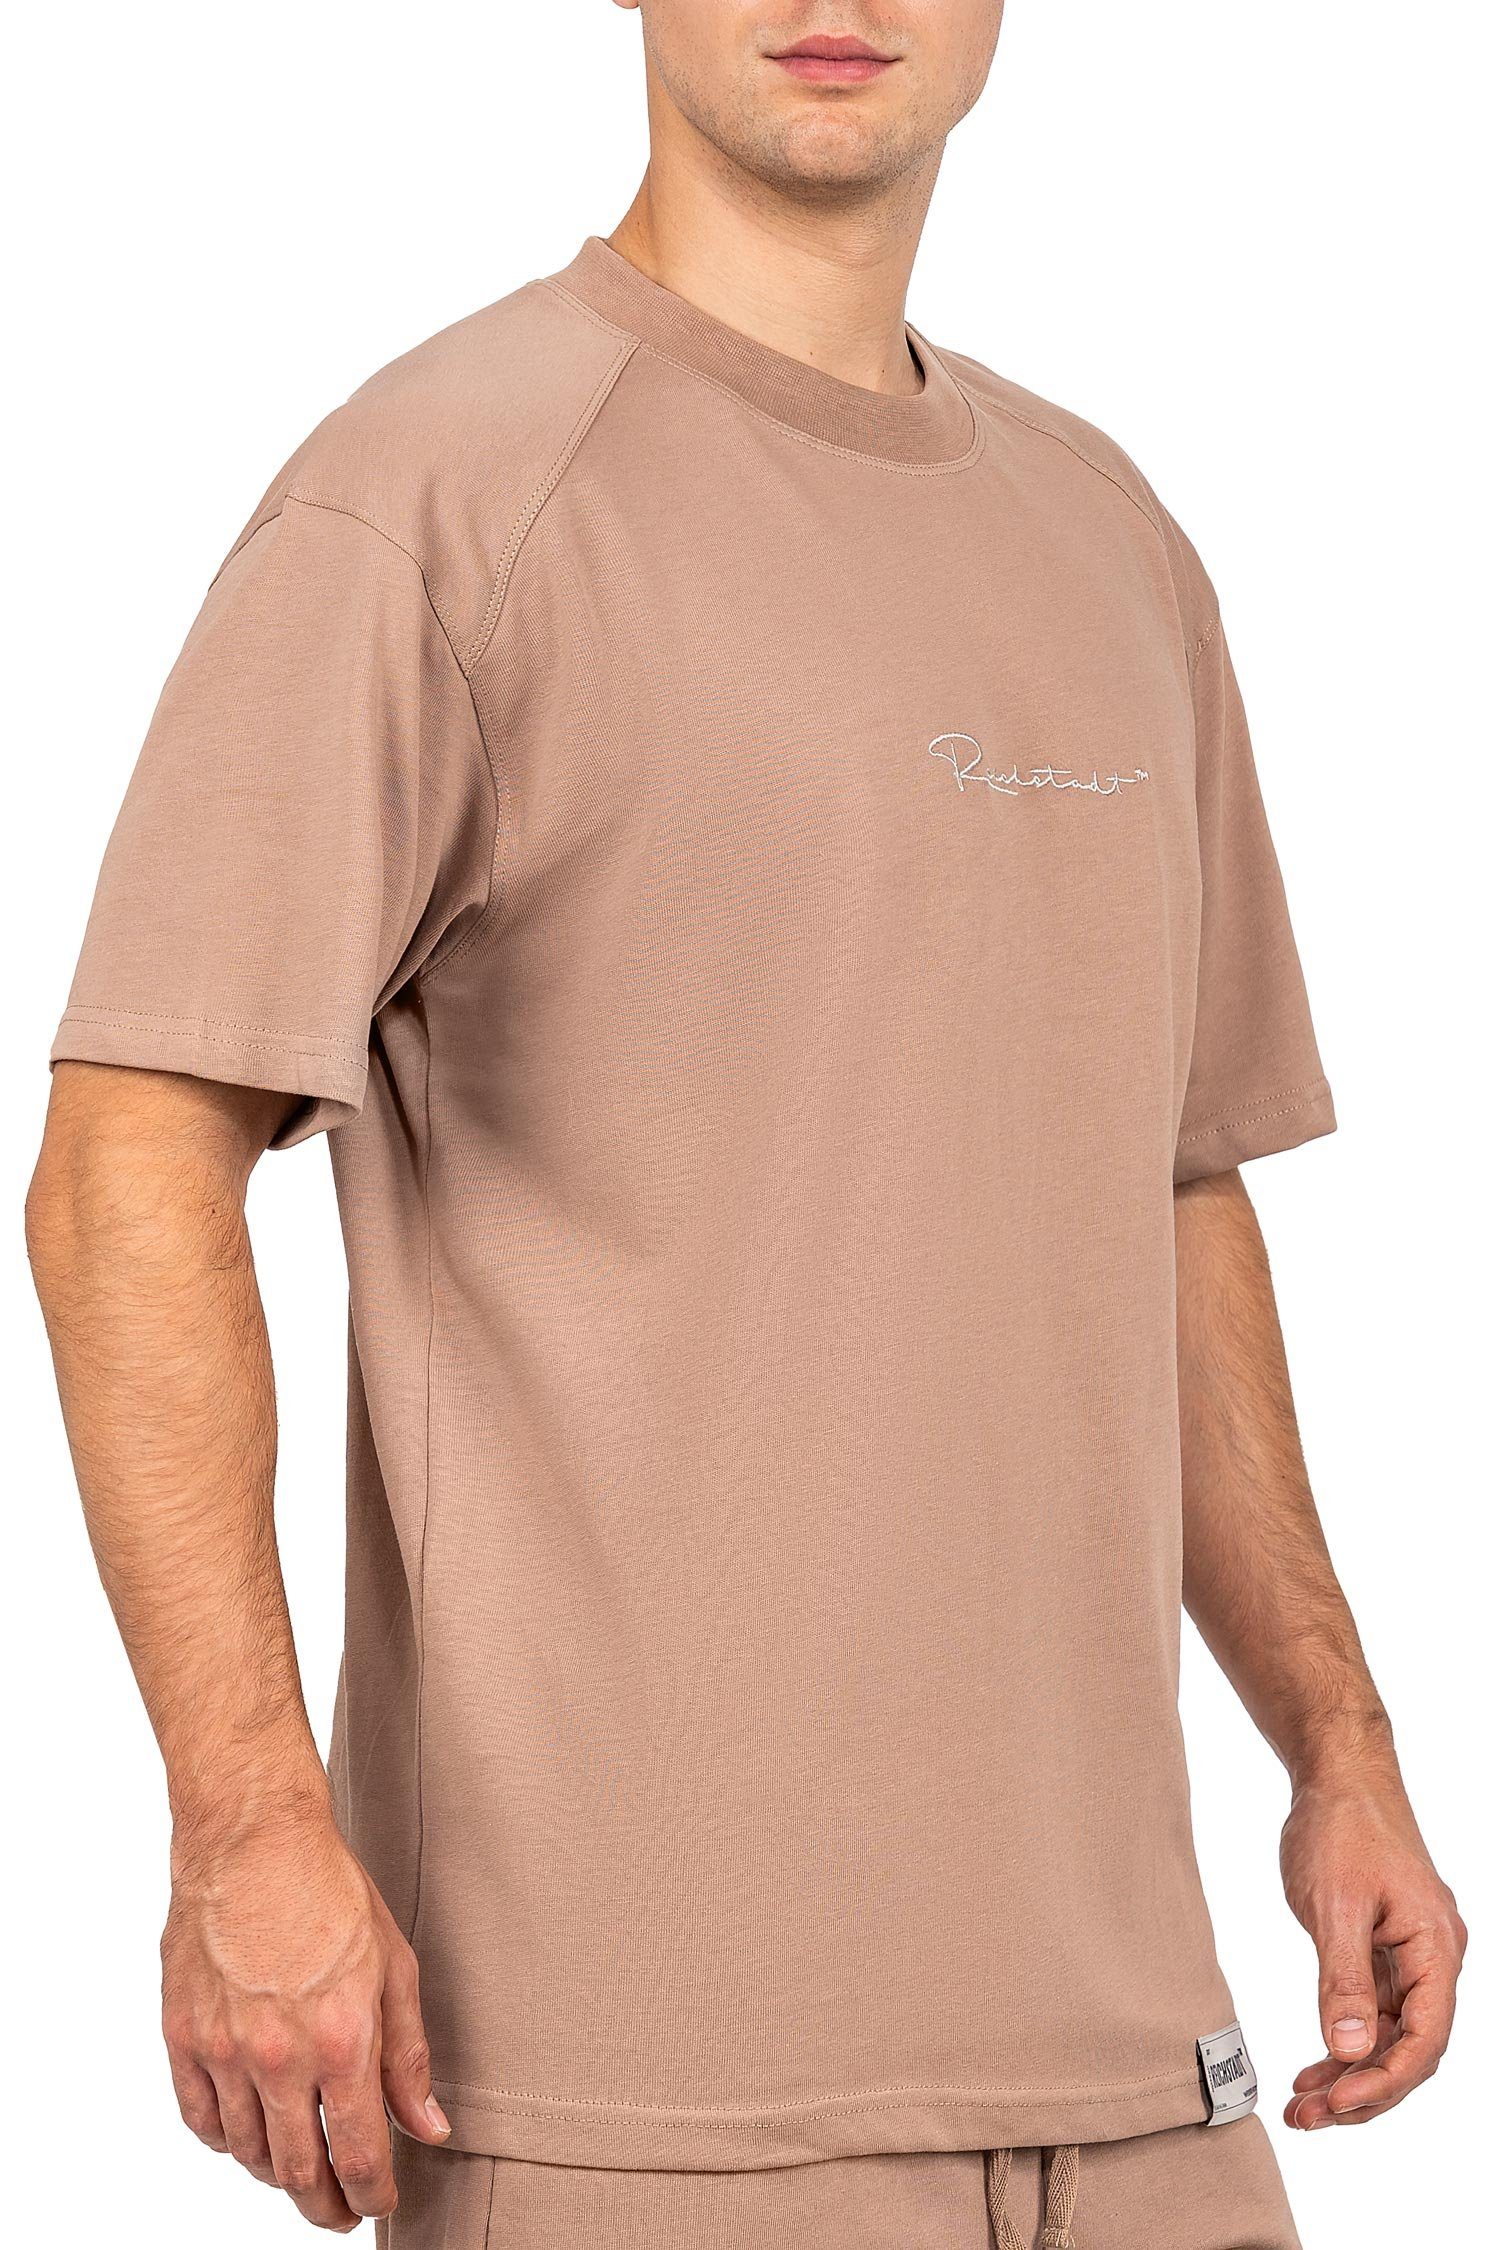 Reichstadt Oversize-Shirt Stitching Casual 22RS033 Braun mit T-shirt Brust auf (1-tlg) der